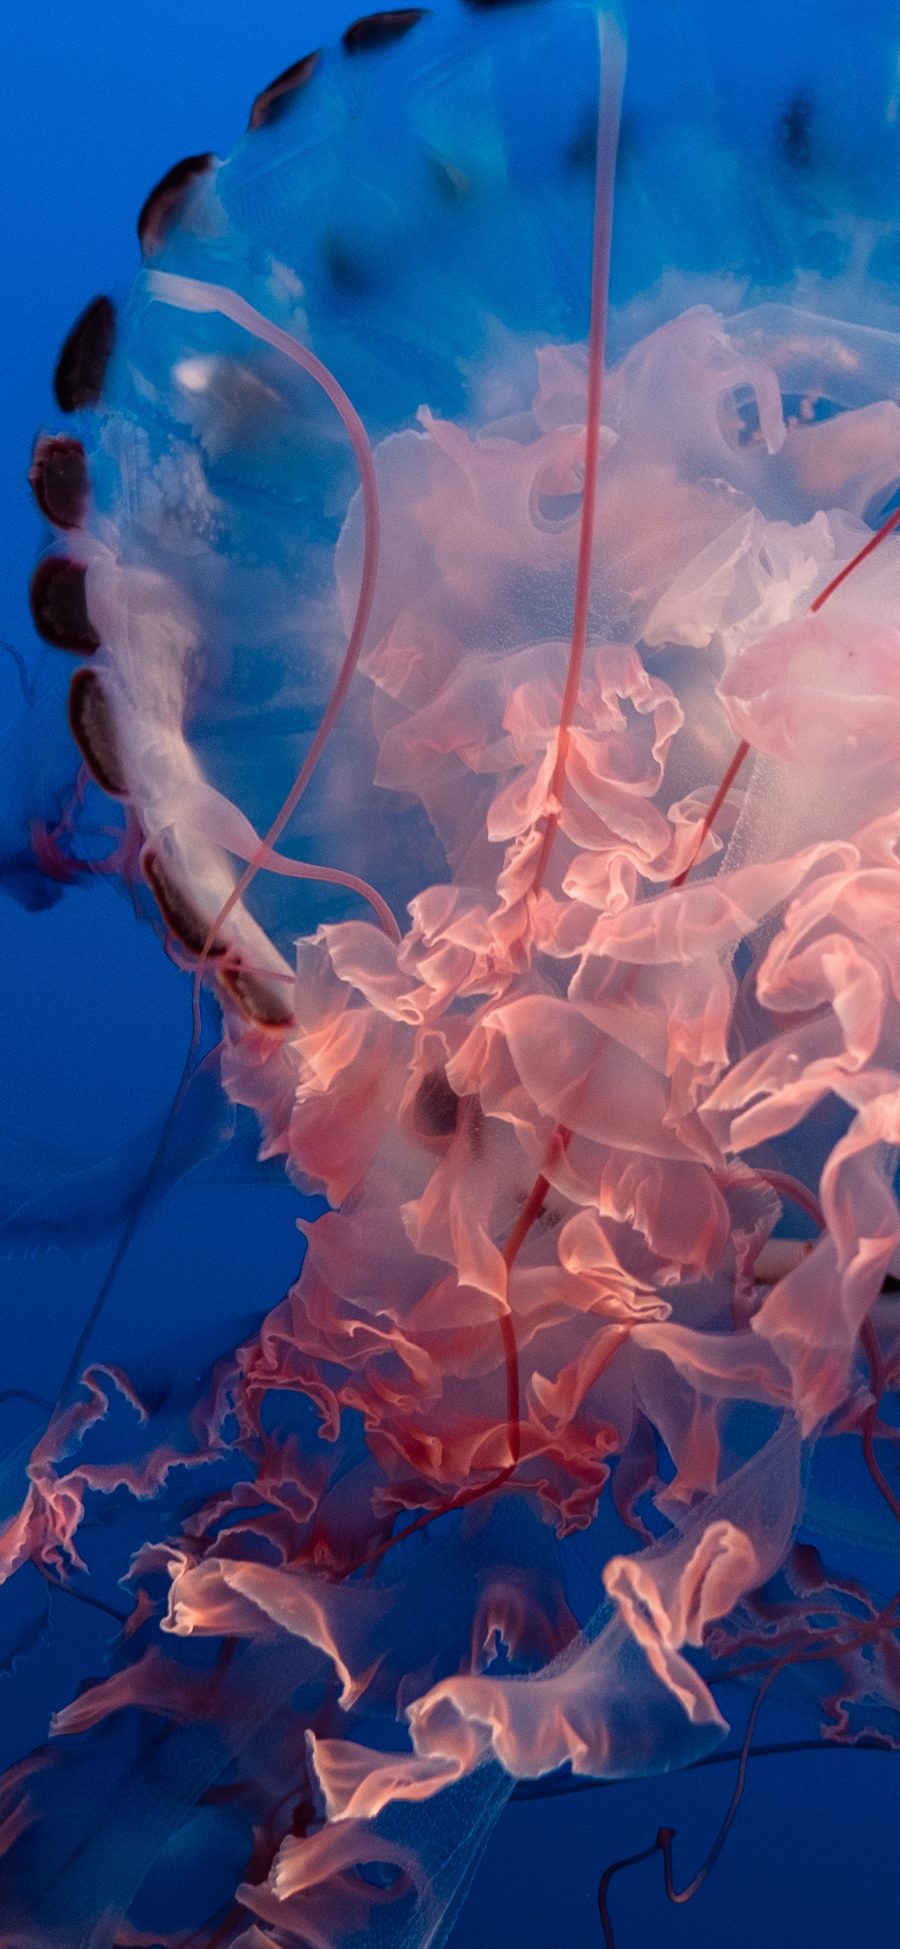 [2436×1125]水母 触手  软体 海洋生物 苹果手机壁纸图片